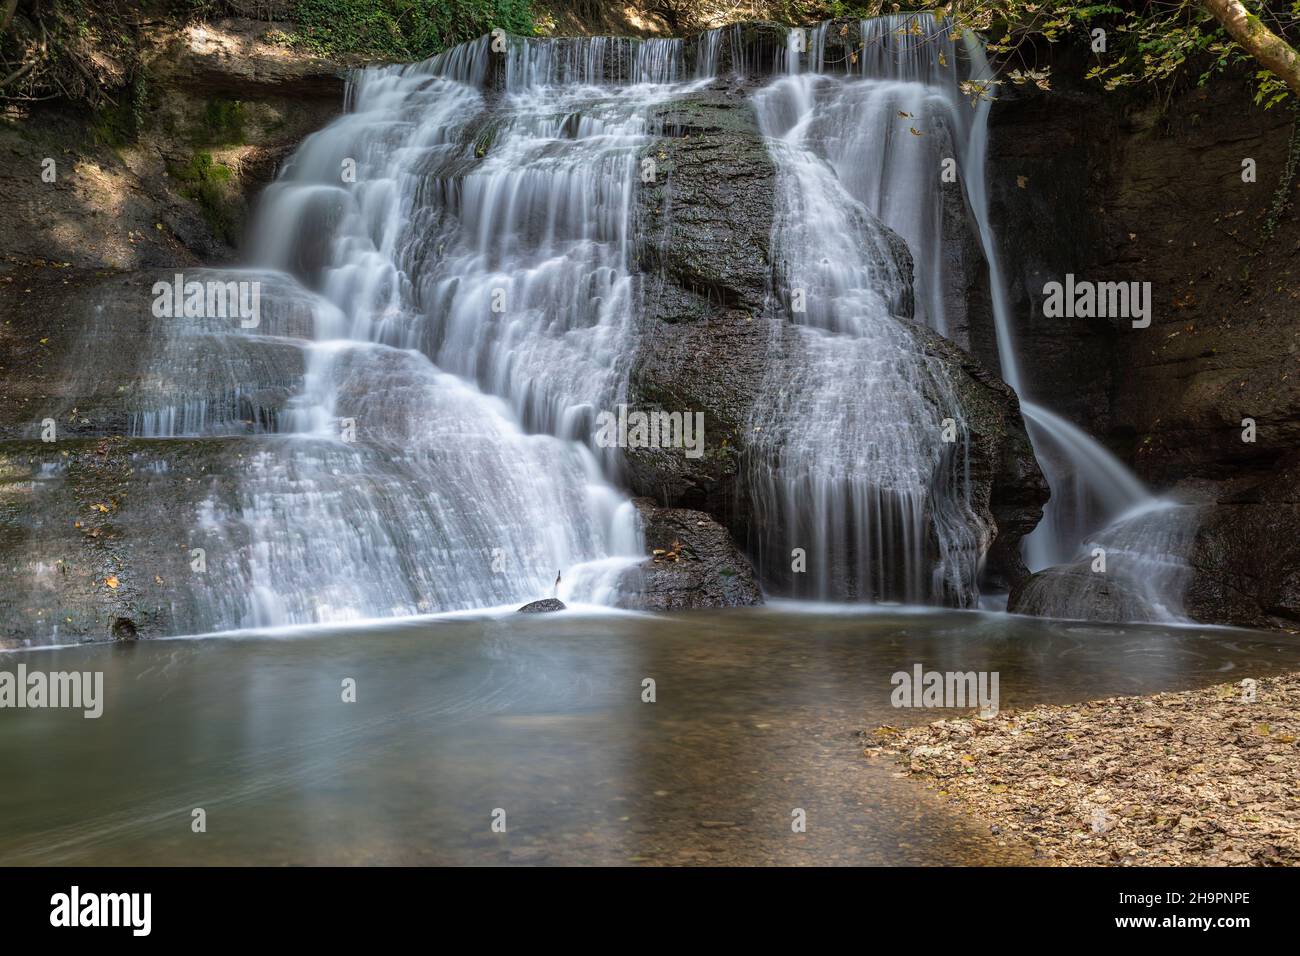 Starzel waterfall near Jungingen, Swabian Alb, Germany Stock Photo